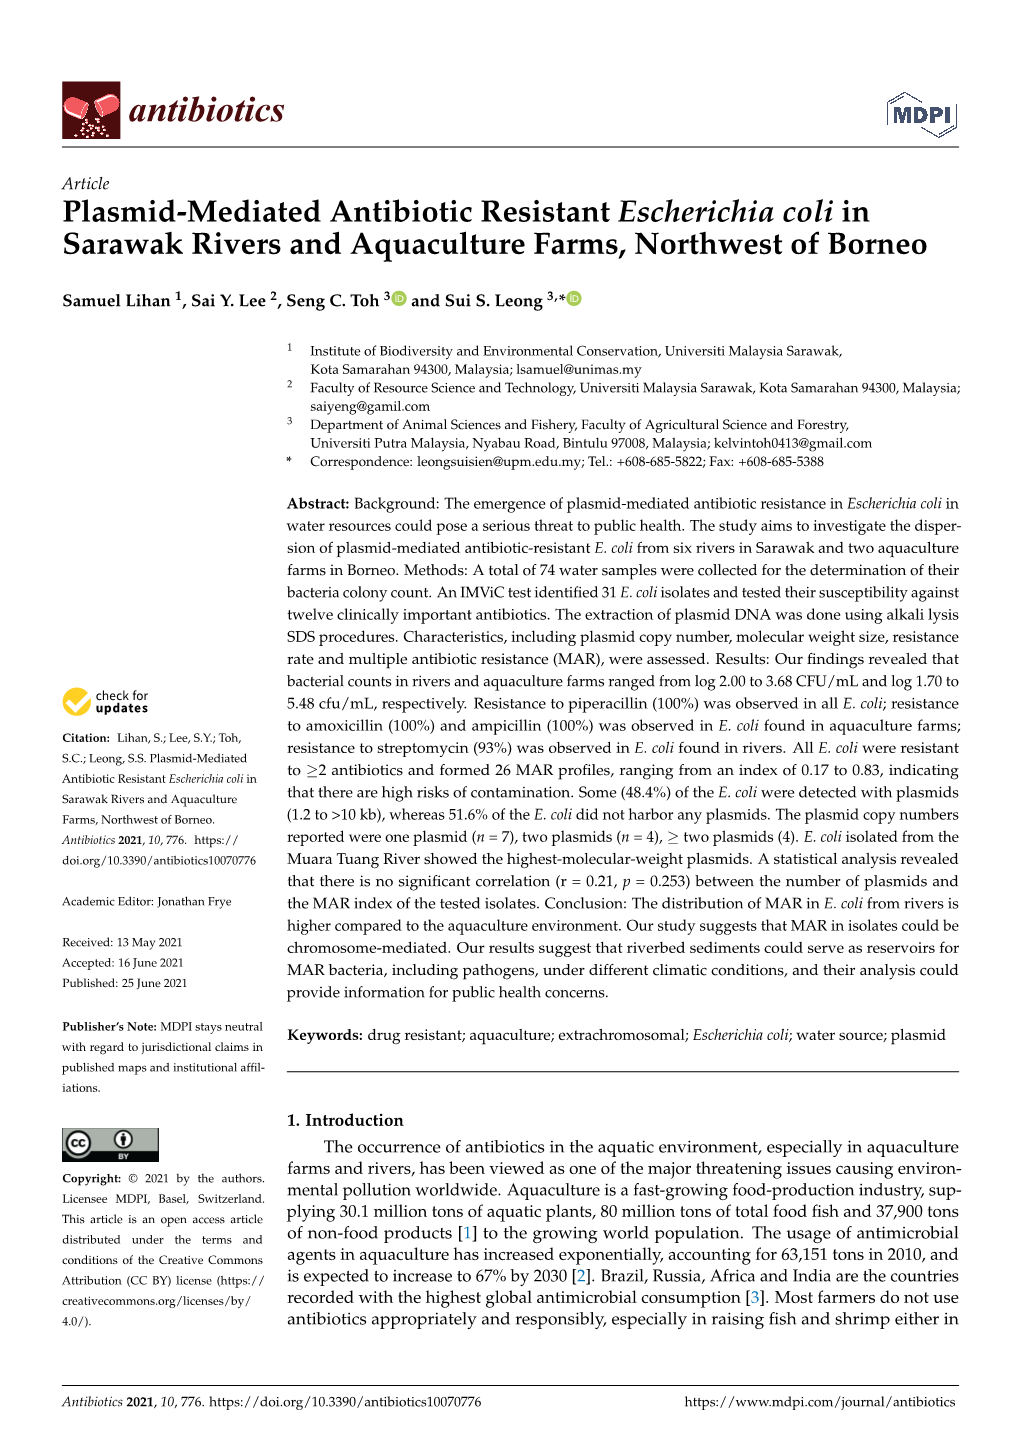 Plasmid-Mediated Antibiotic Resistant Escherichia Coli in Sarawak Rivers and Aquaculture Farms, Northwest of Borneo